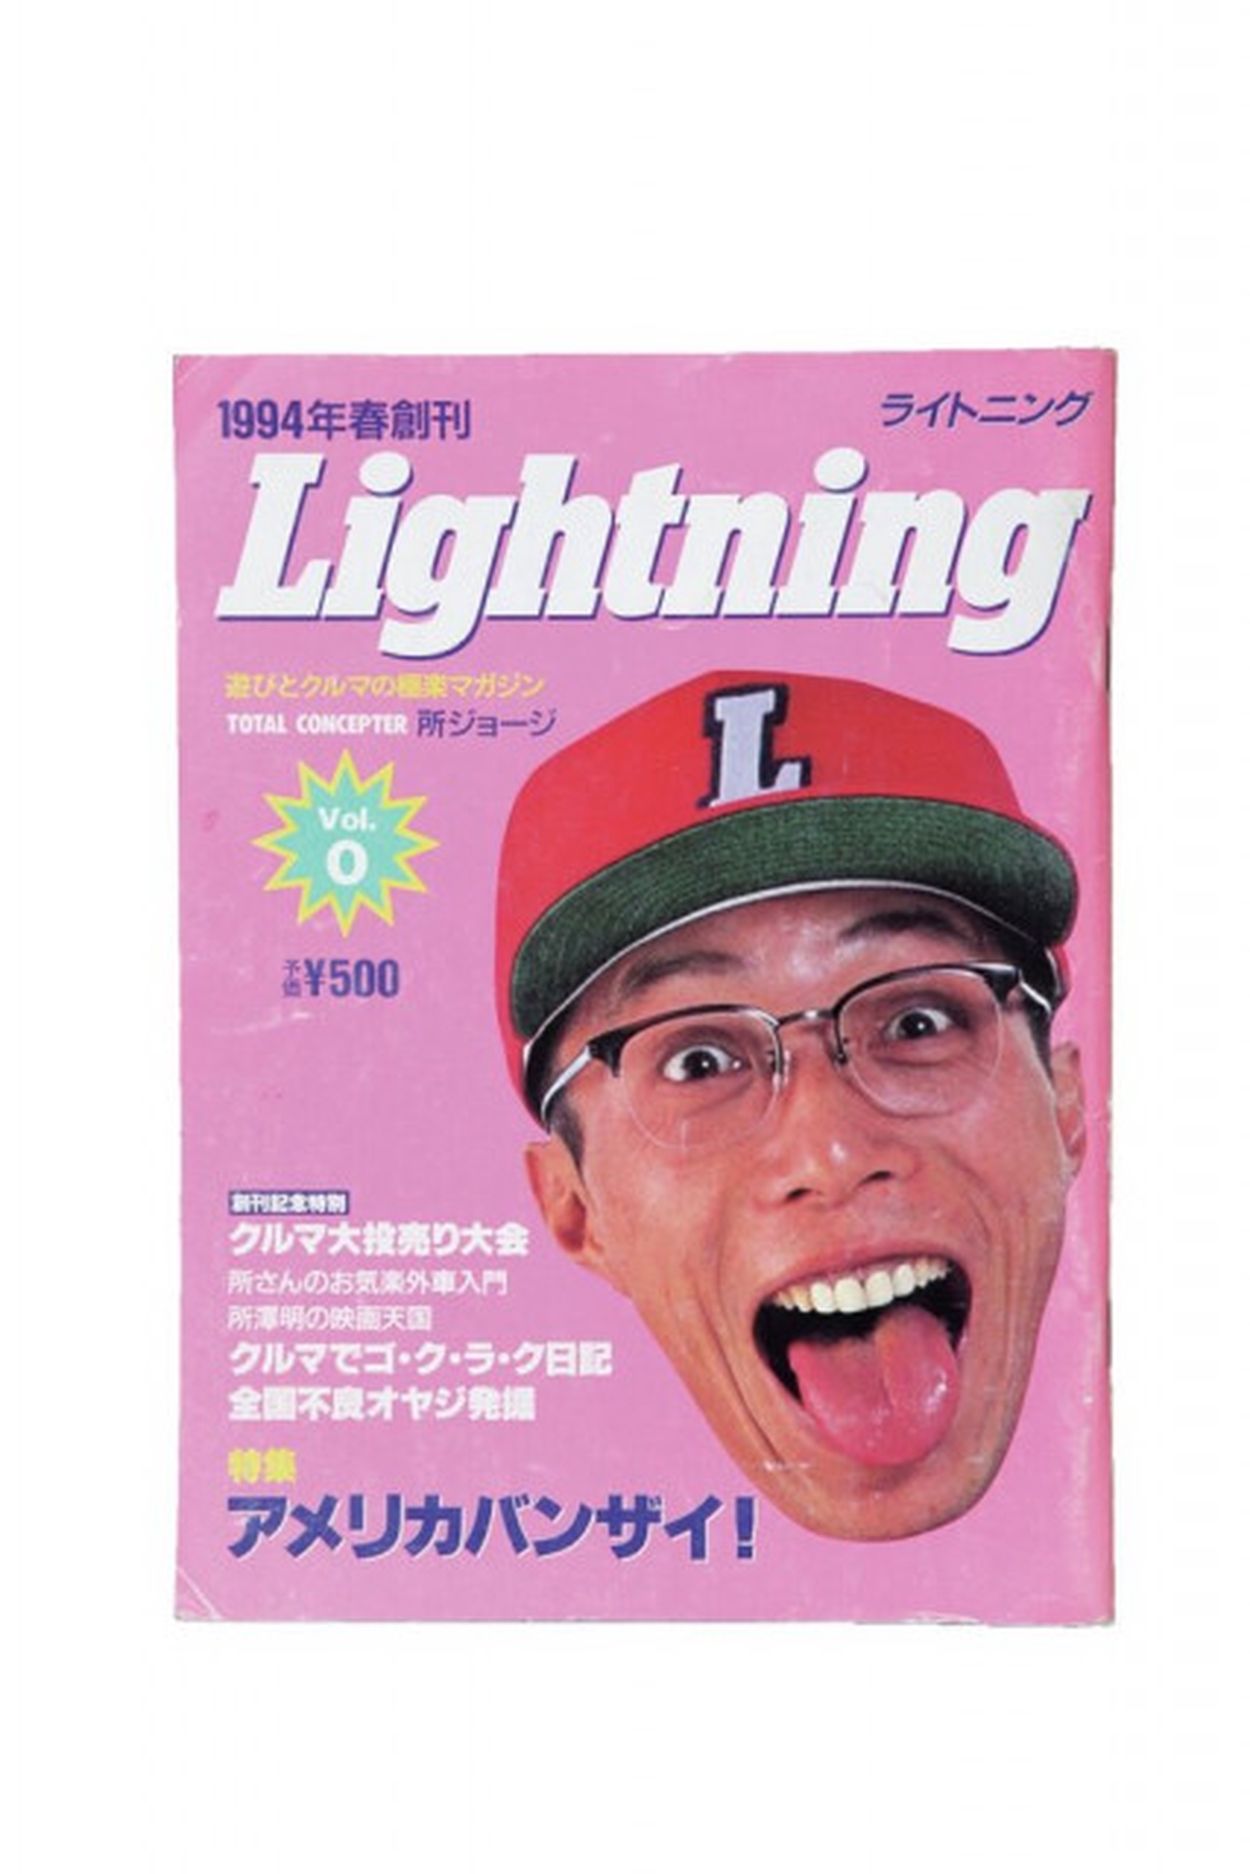 事件もあった！？ 雑誌Lightningの30年の歩みを振り返ってみた(Dig-it) - goo ニュース